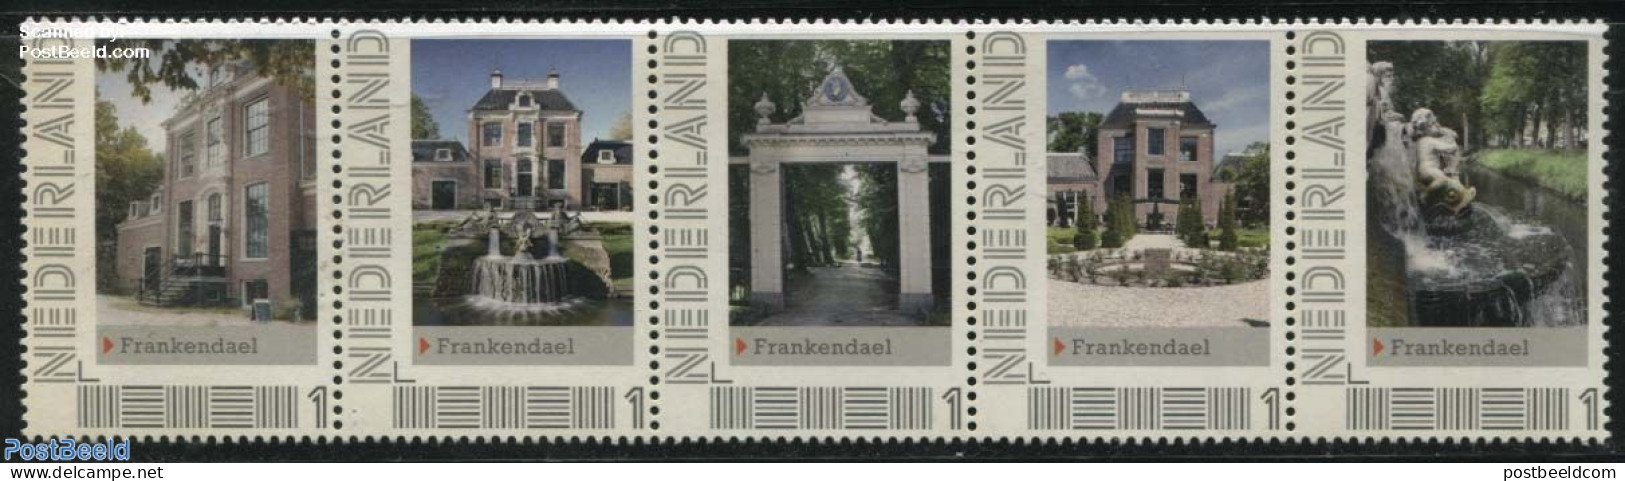 Netherlands - Personal Stamps TNT/PNL 2012 Frankendael 5v [::::], Mint NH, Art - Castles & Fortifications - Kastelen